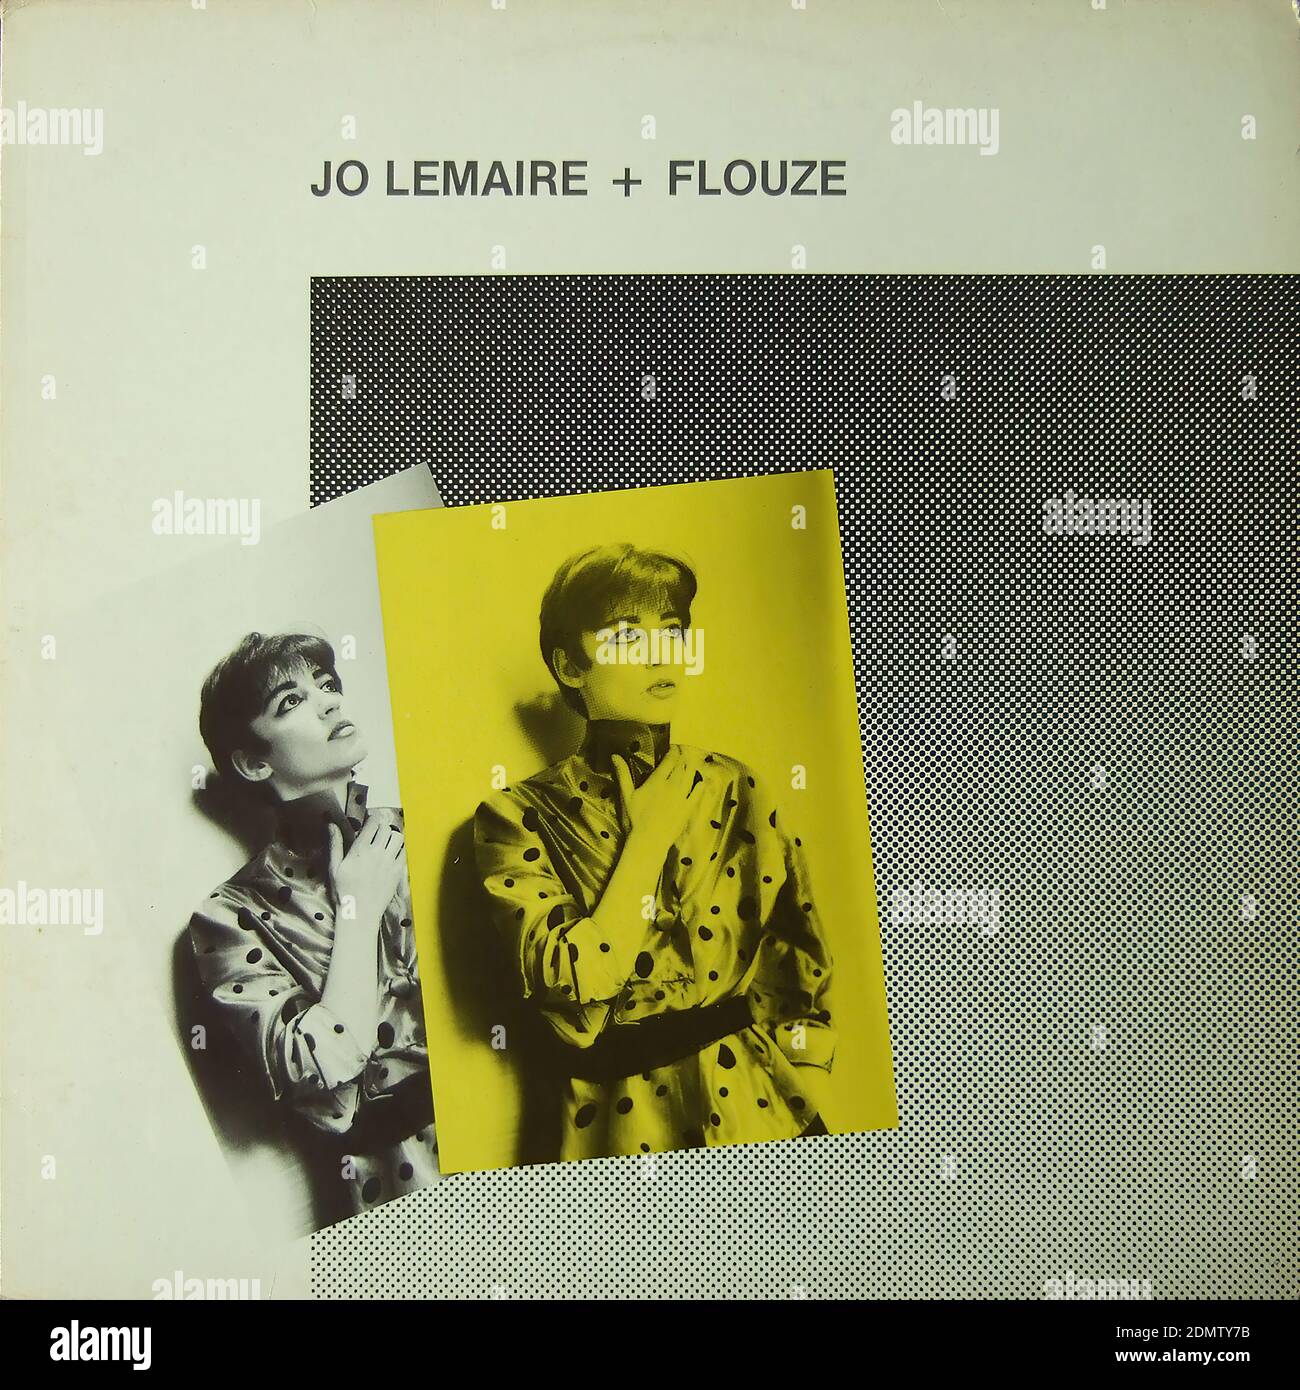 Jo Lemaire + Flouze - Vintage vinyl album cover Stock Photo